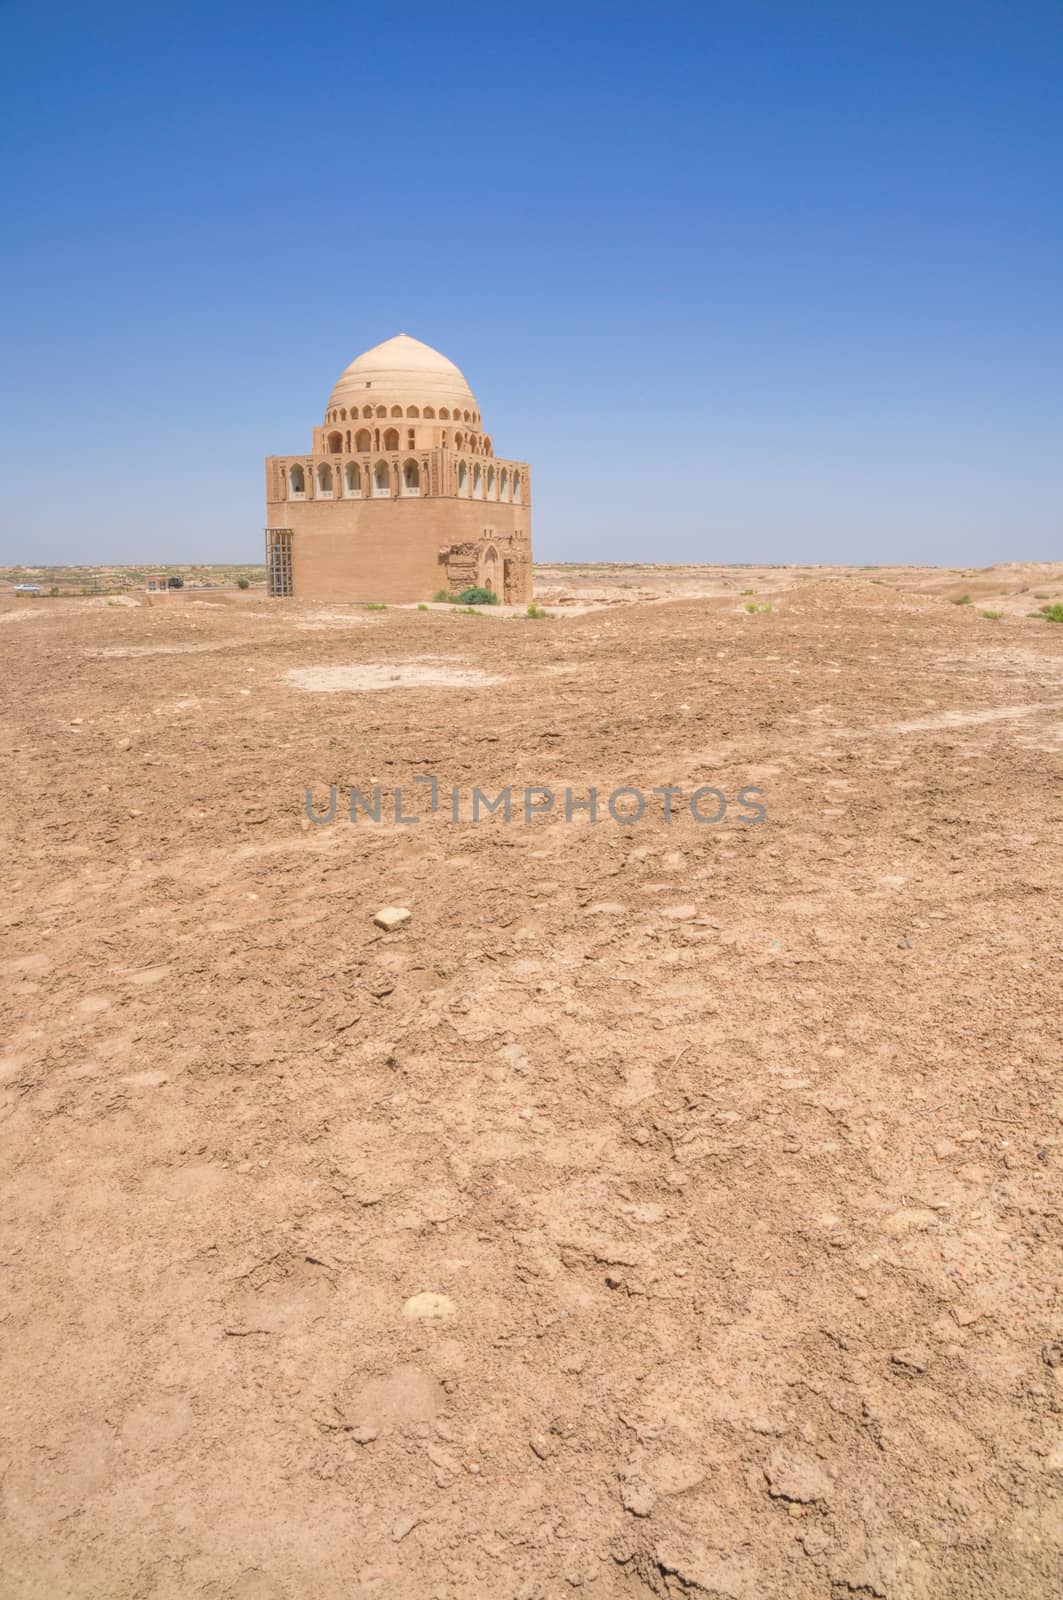 Temple in Turkmenistan by MichalKnitl